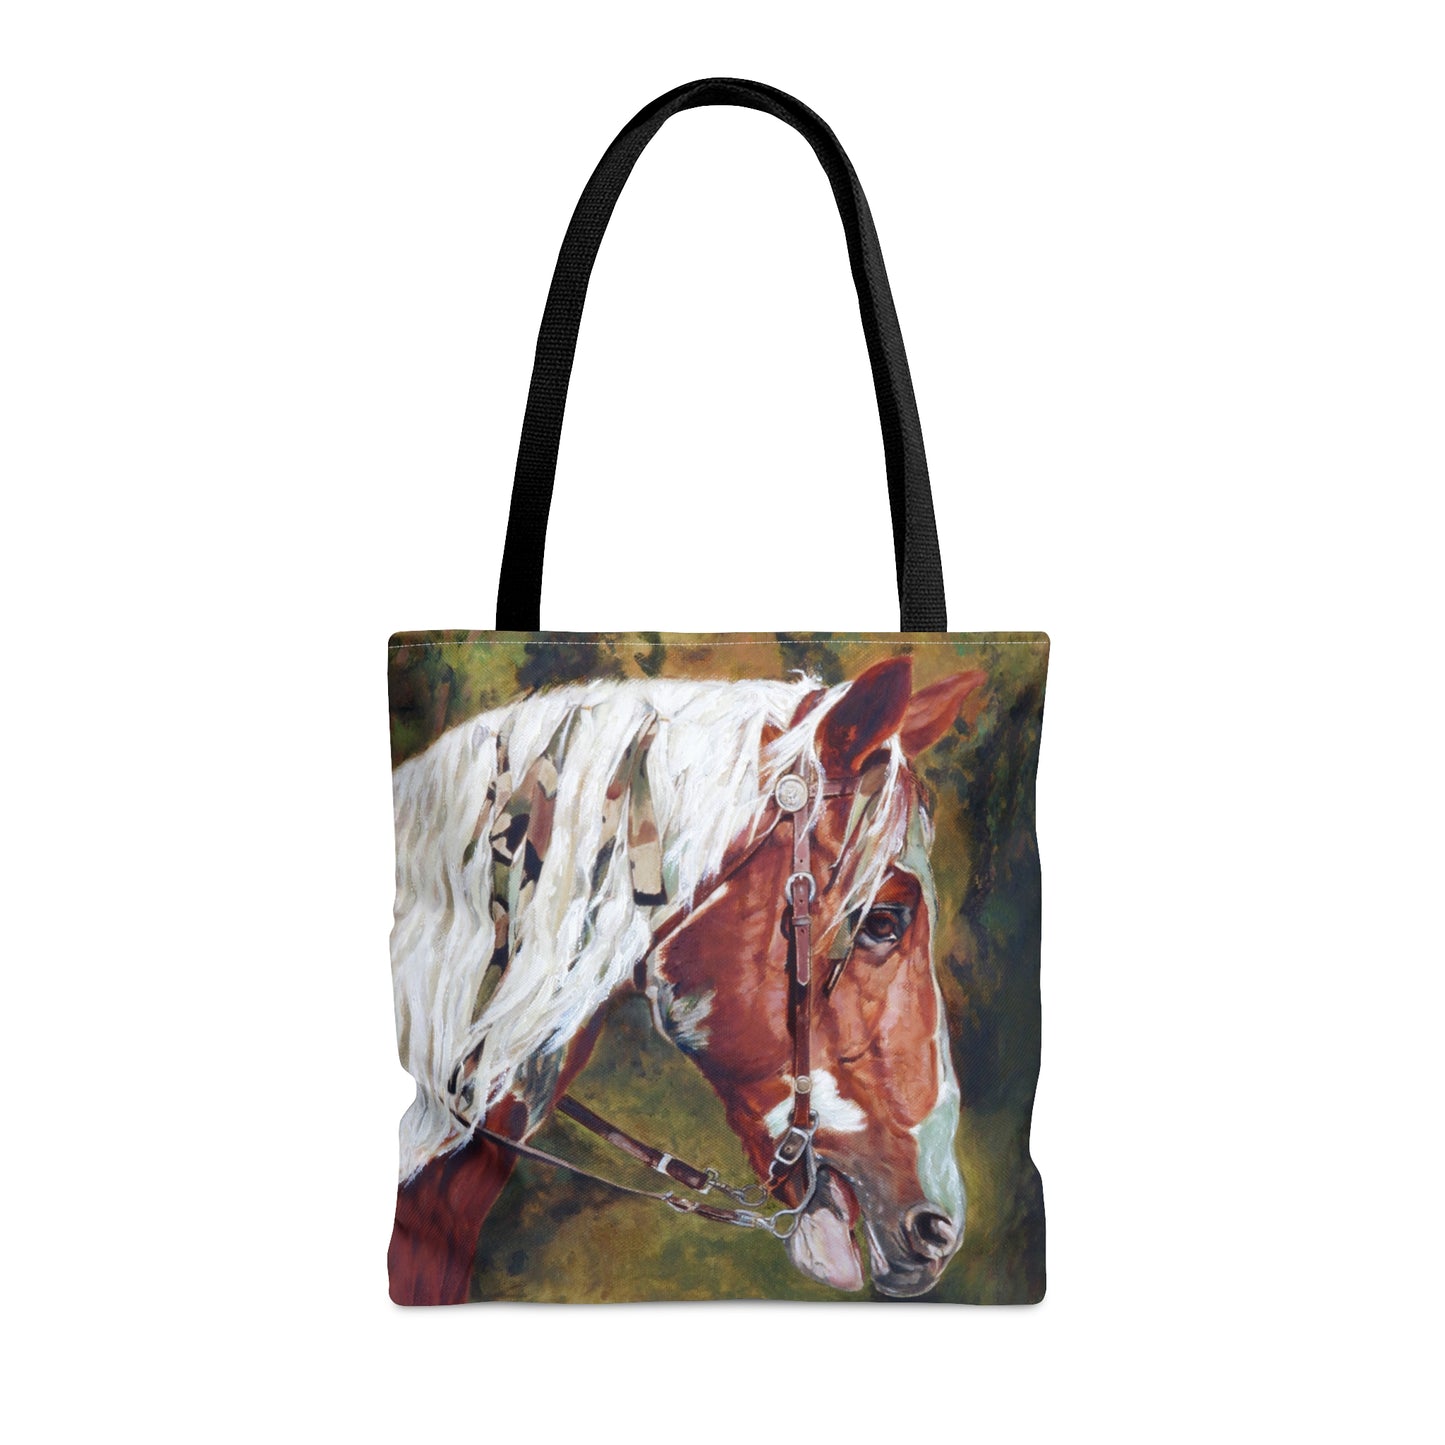 Taschen-Taschen-Krieger-Pferdepferdeartiger Entwurf